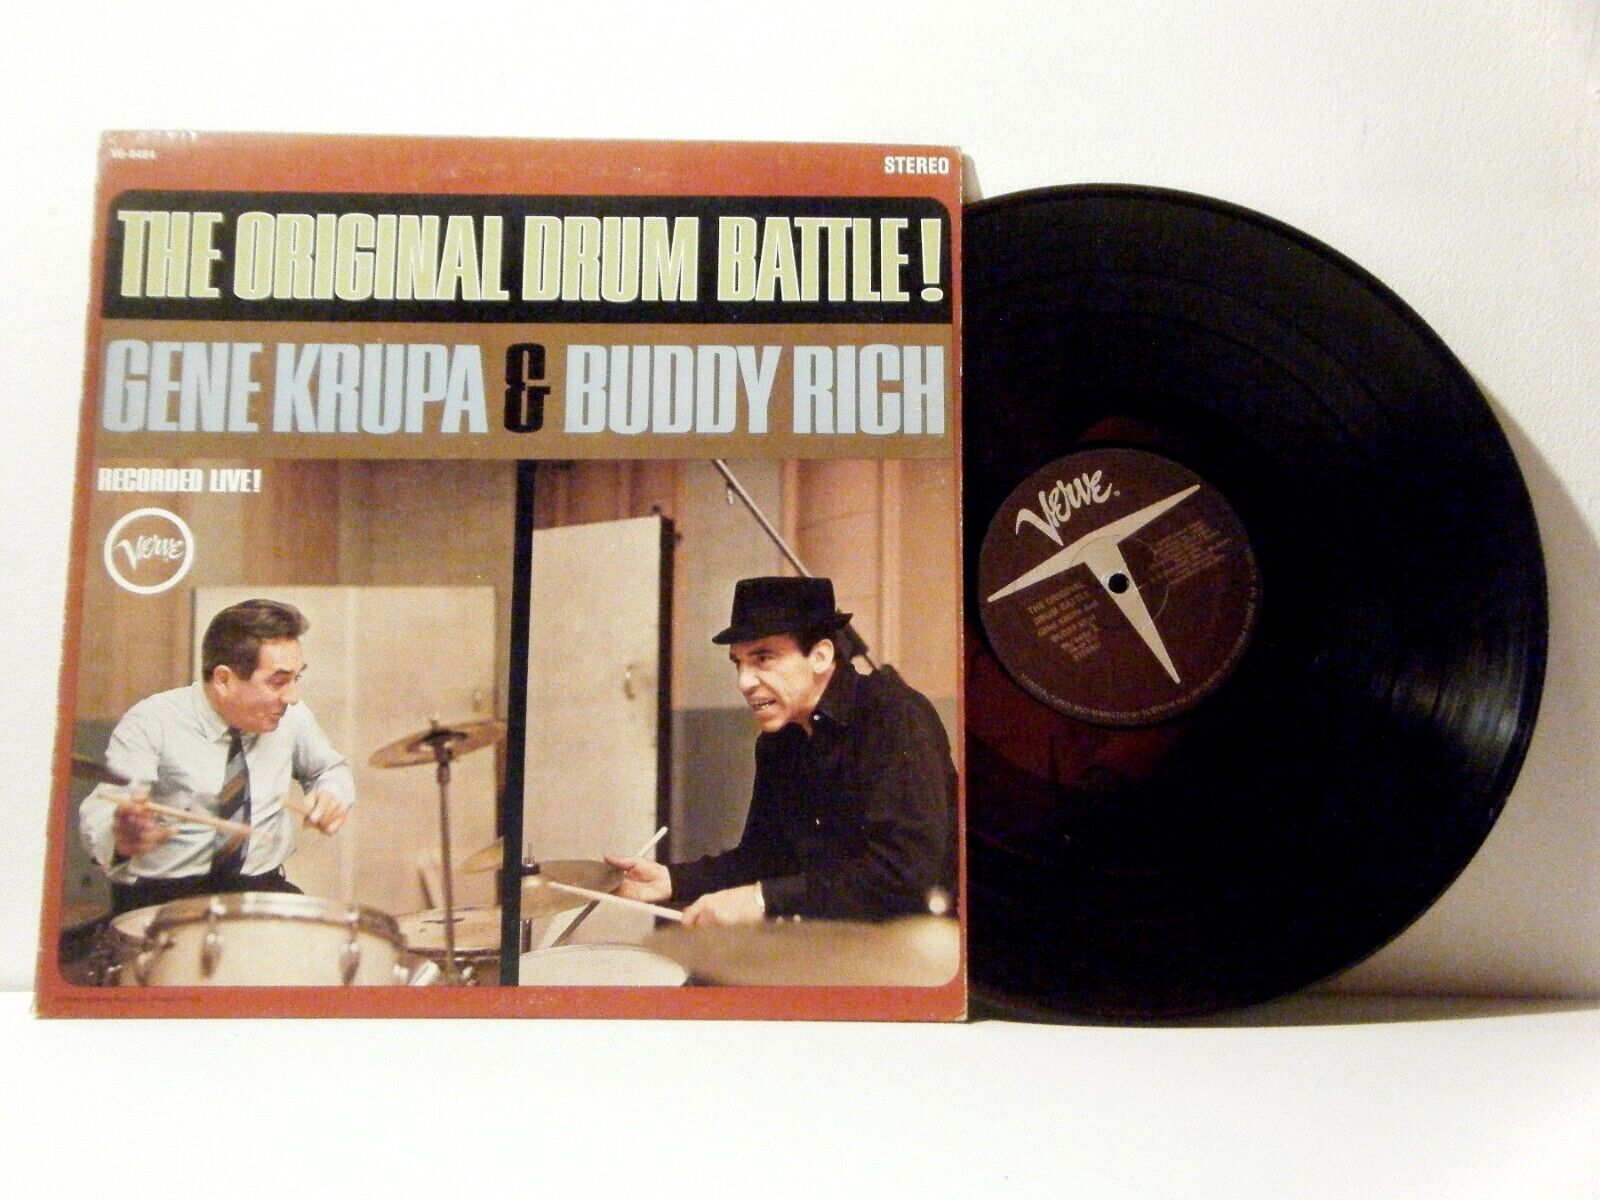 GENE KRUPA and BUDDY RICH LP The Original Drum Battle! 1961 Verve RE  vinyl